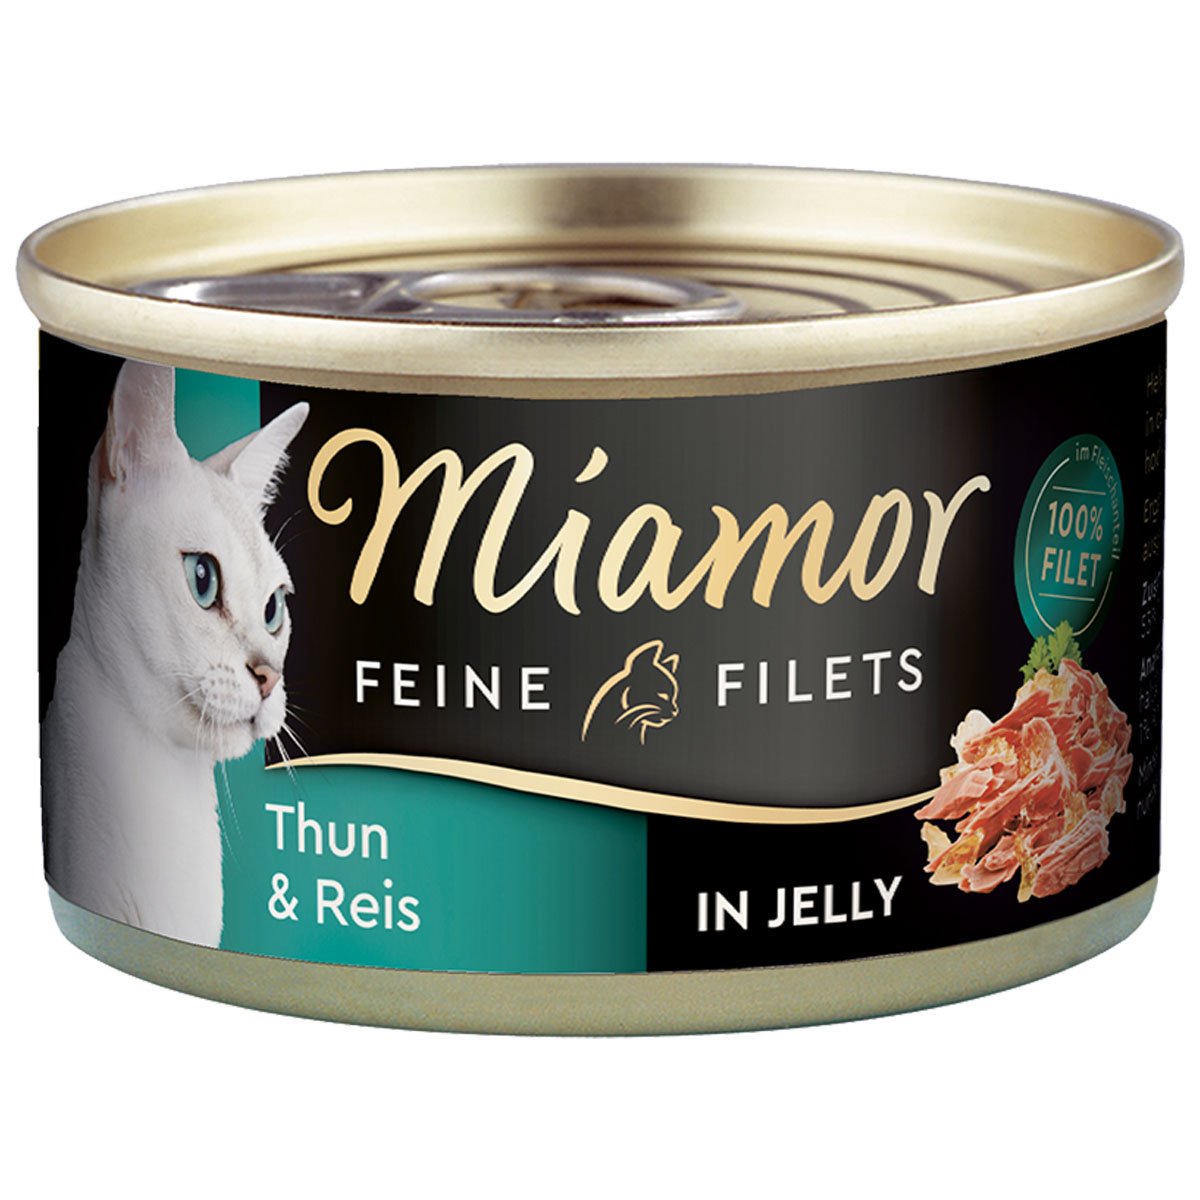 Miamor Katzenfutter Feine Filets in Jelly Thunfisch und Reis 48x100g